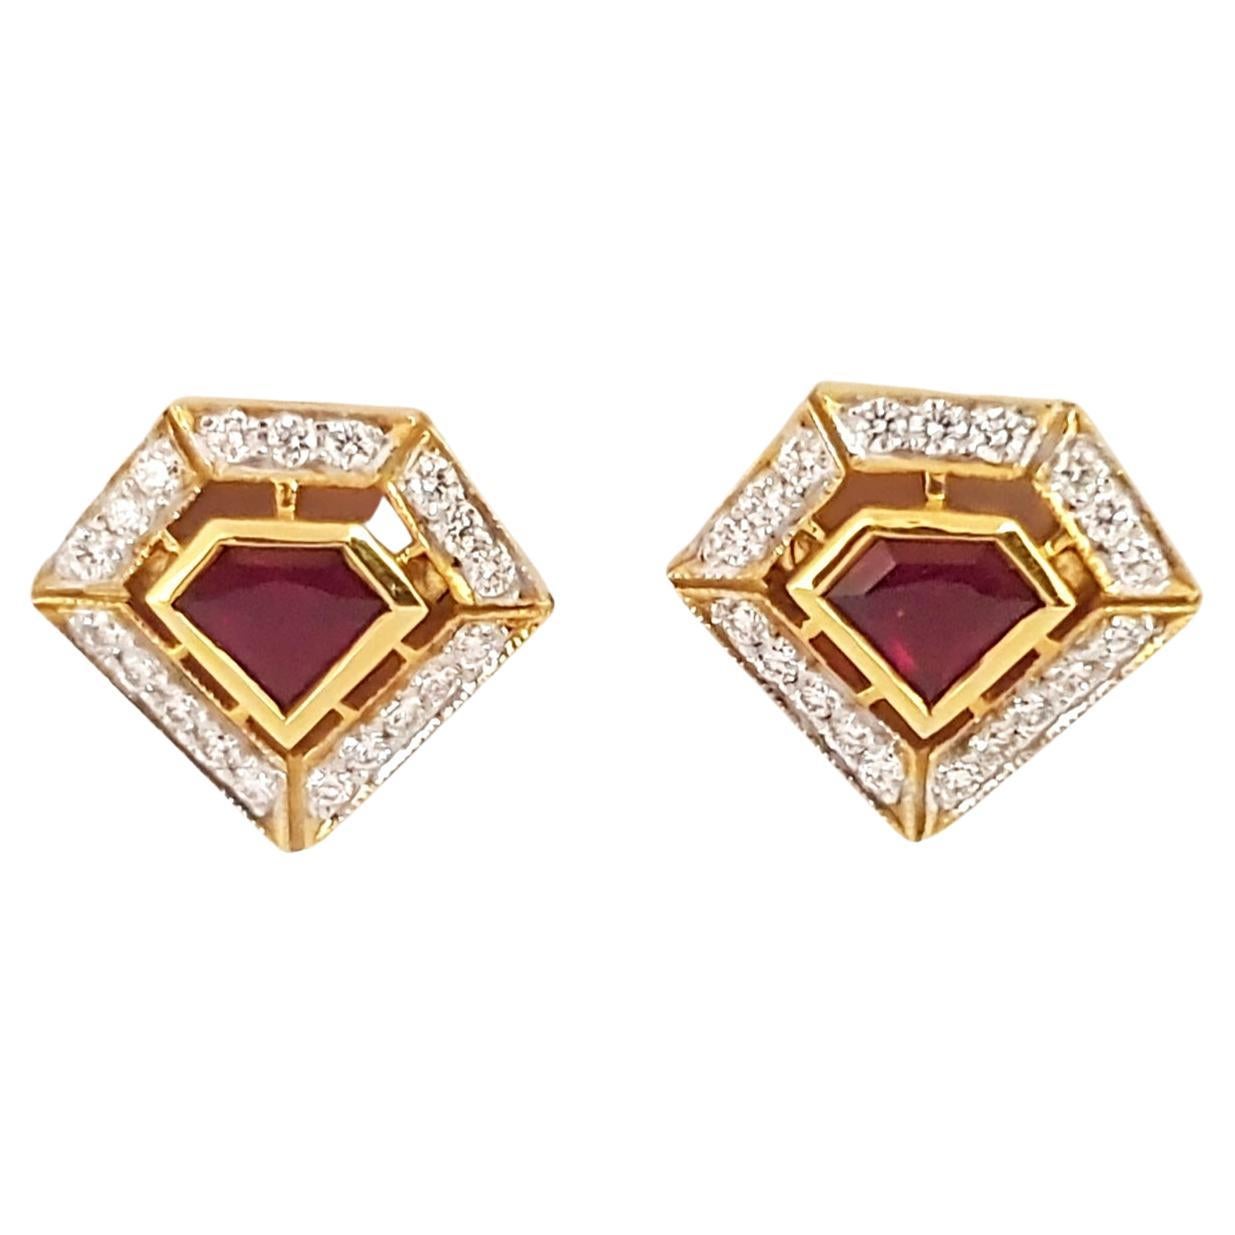 Geoart Ruby, Diamond Stud Earrings 18k Yellow Gold